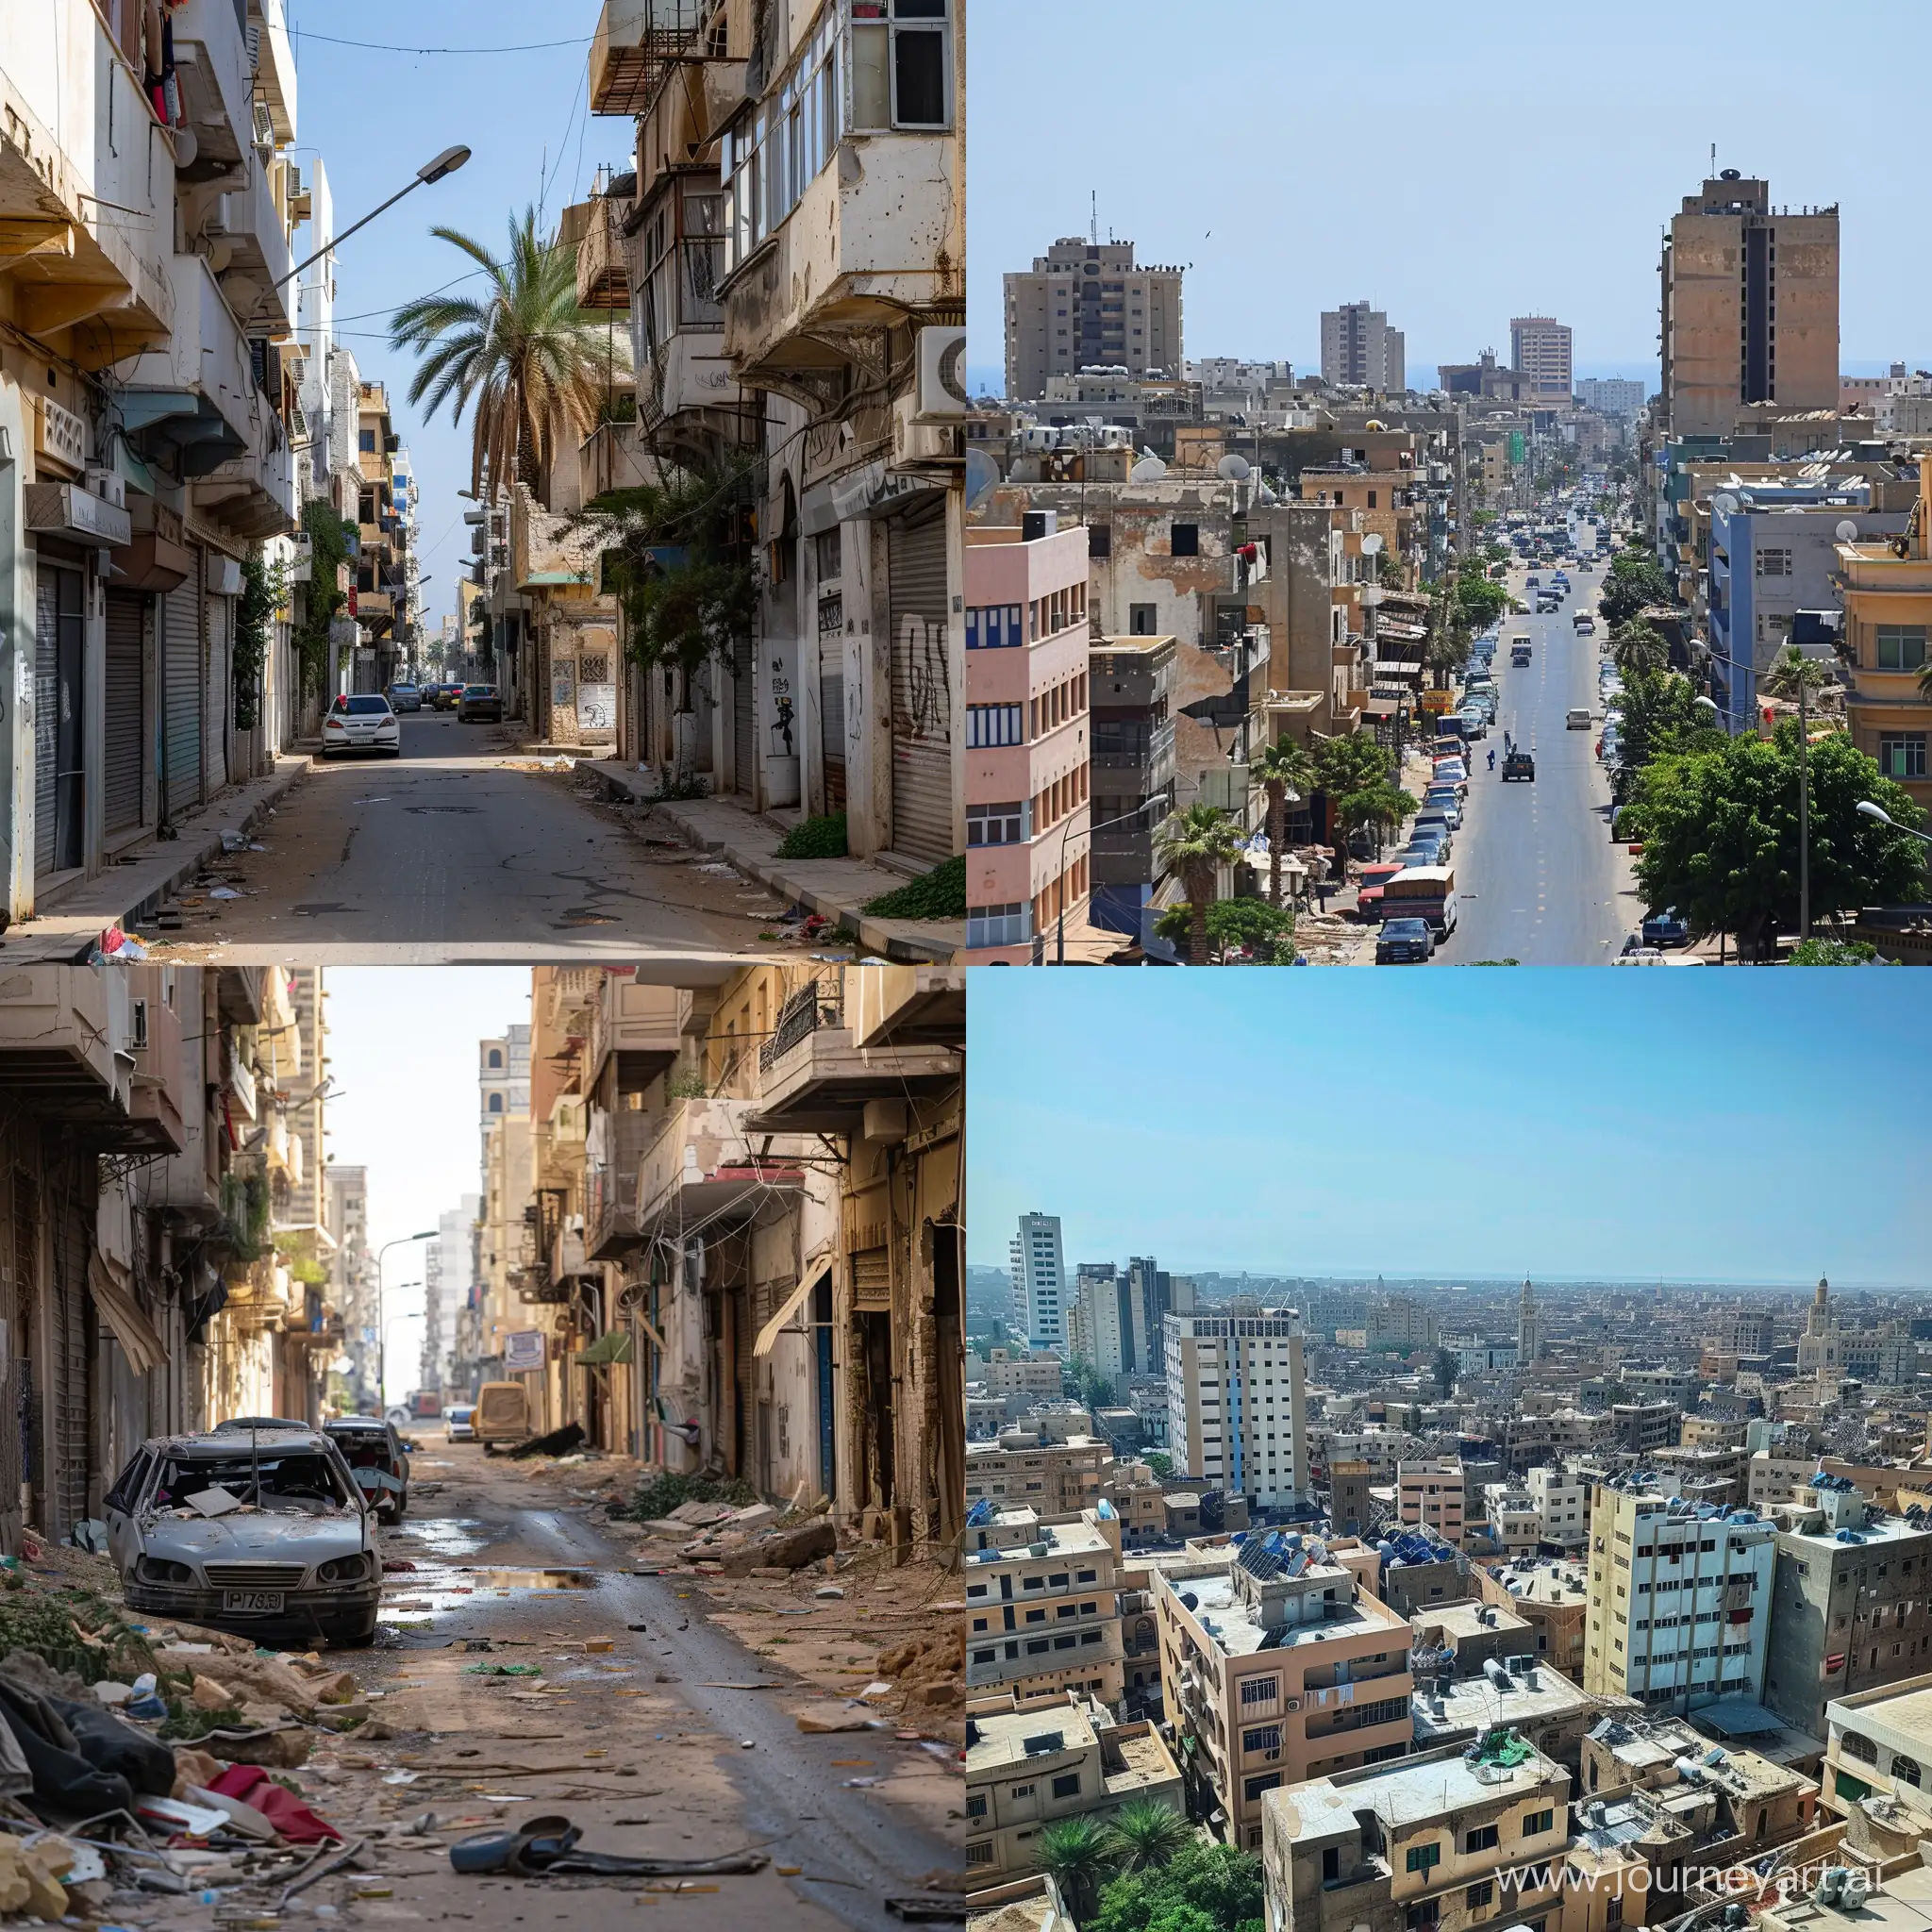 Vibrant-Urban-Scene-in-Tripoli-Libya-2025